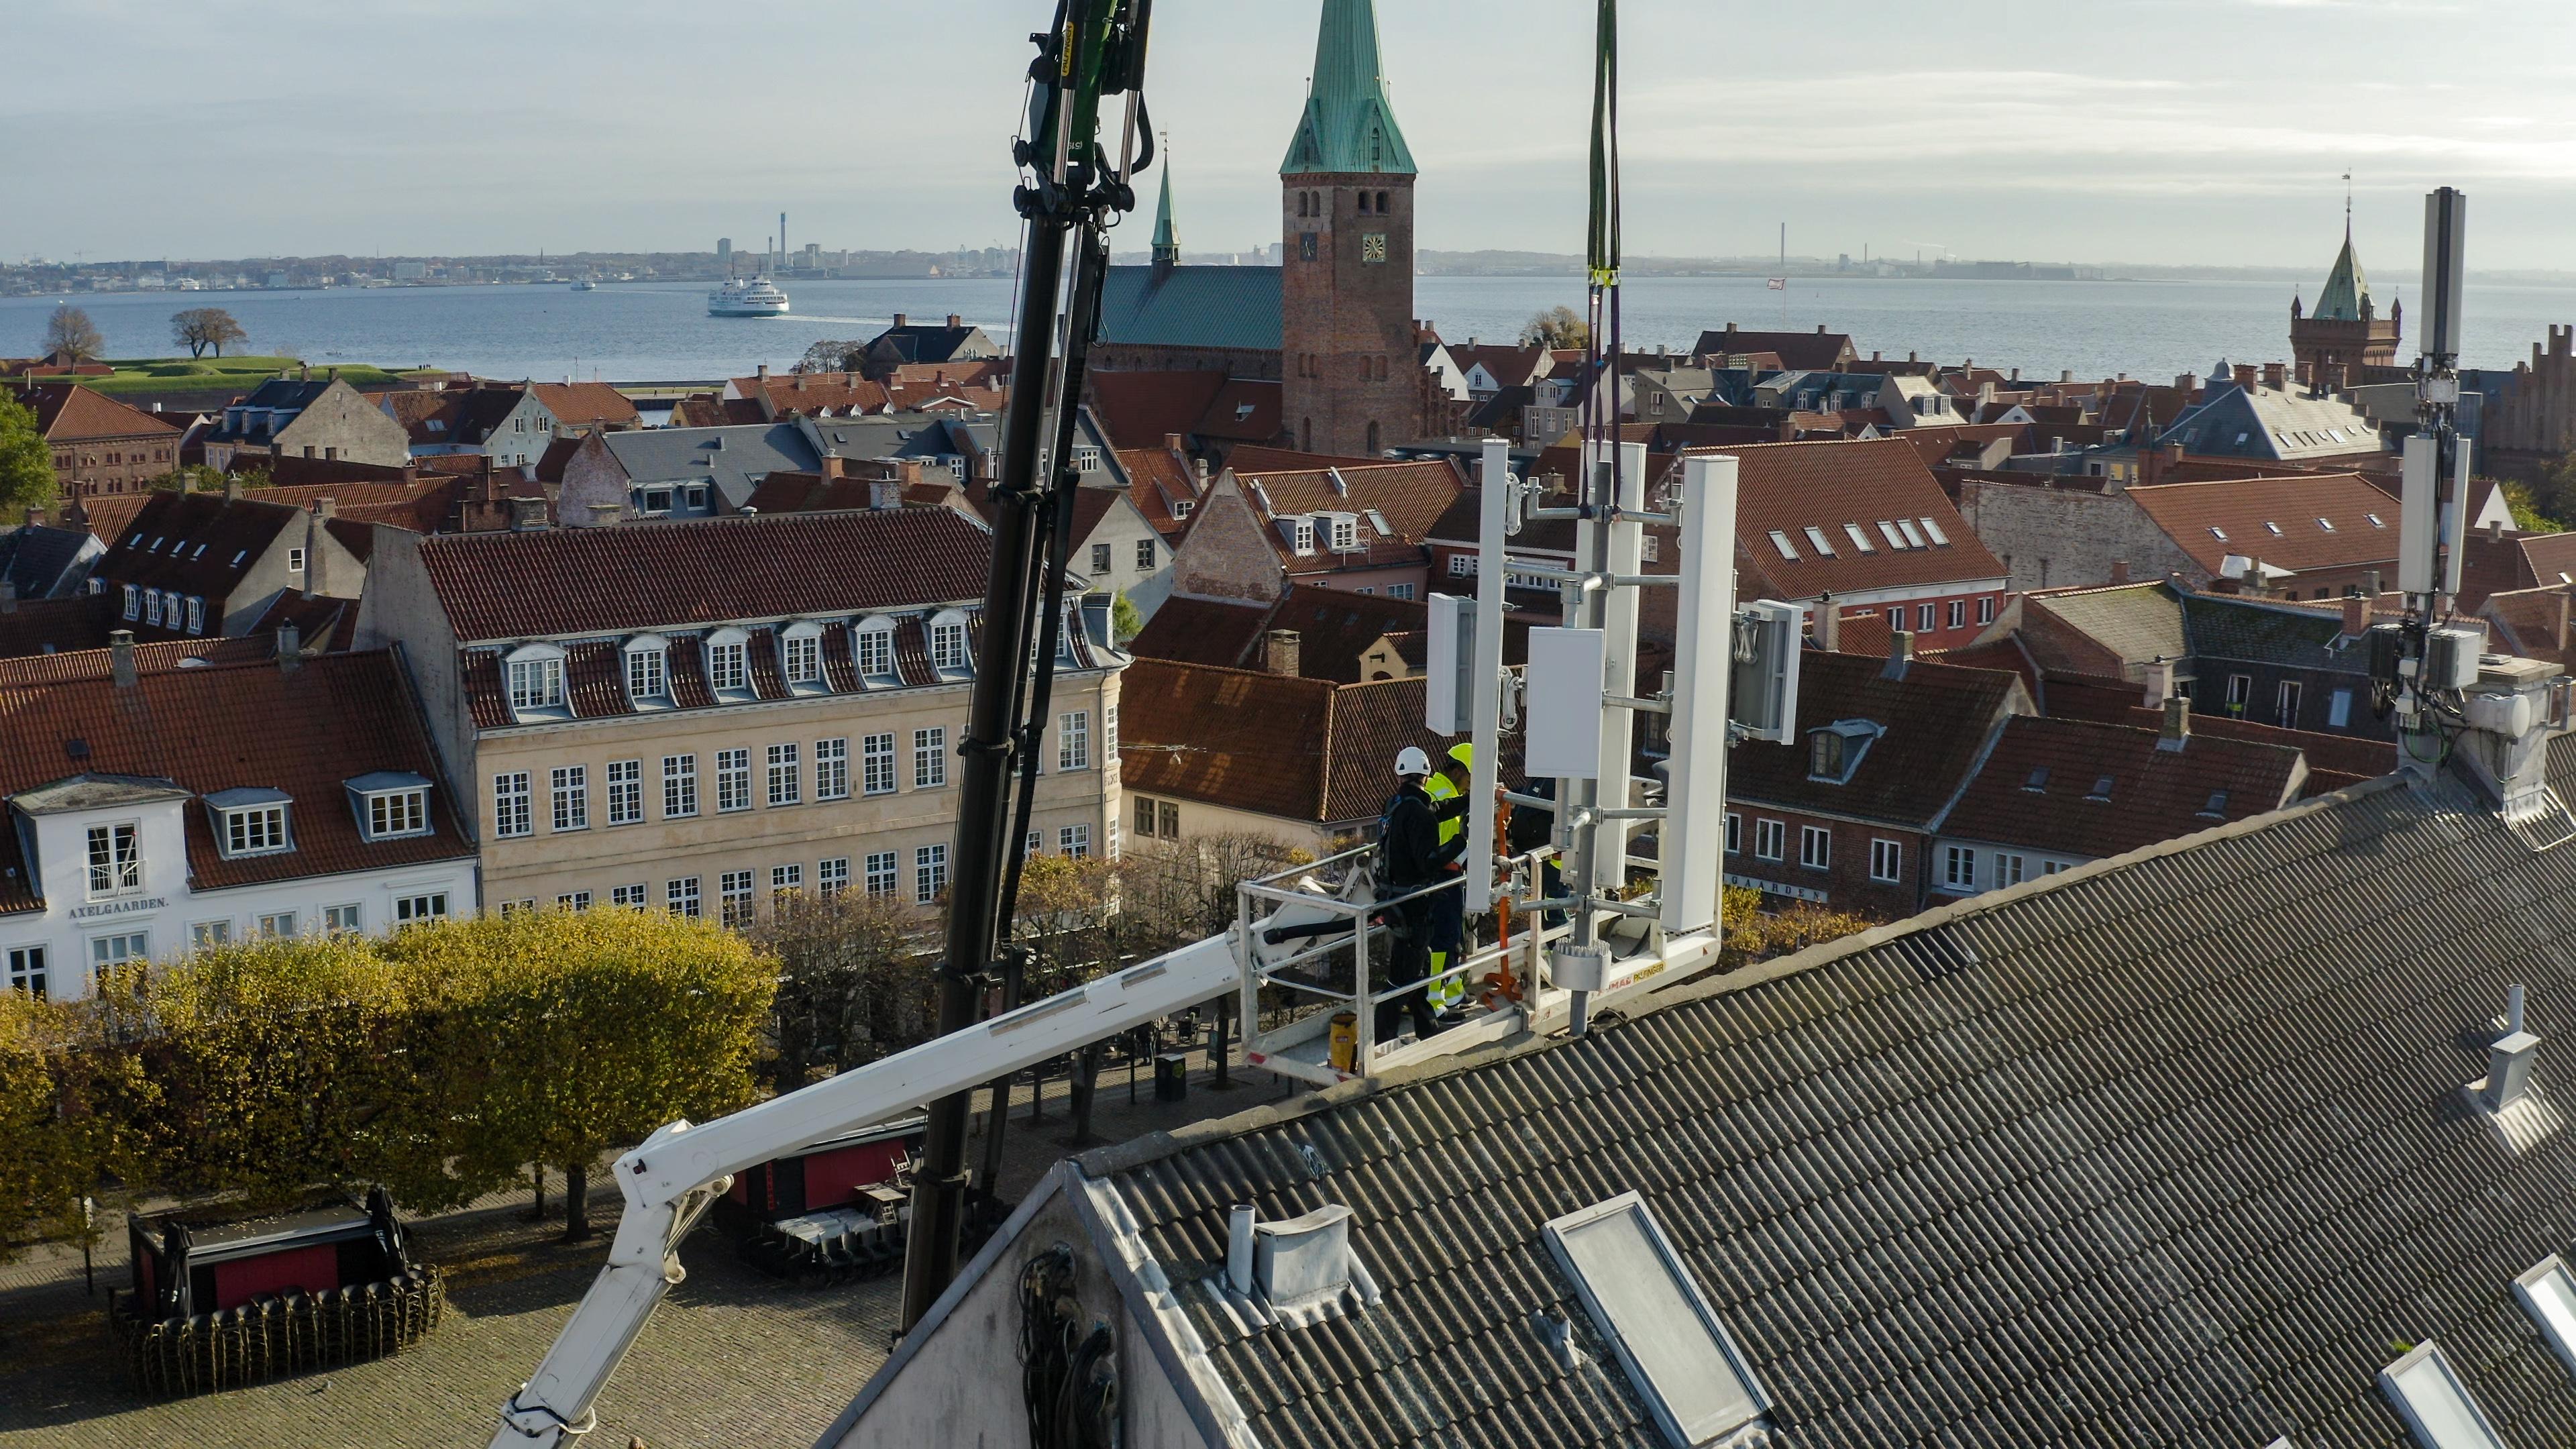 På et af tagene ved Axeltorv er der sat nye 5G antenner op, så Helsingør bliver Danmarks første by til at teste det nye net. Men Karen Margrethe Olsen synes ikke, antennerne gør meget godt for byens udseende.